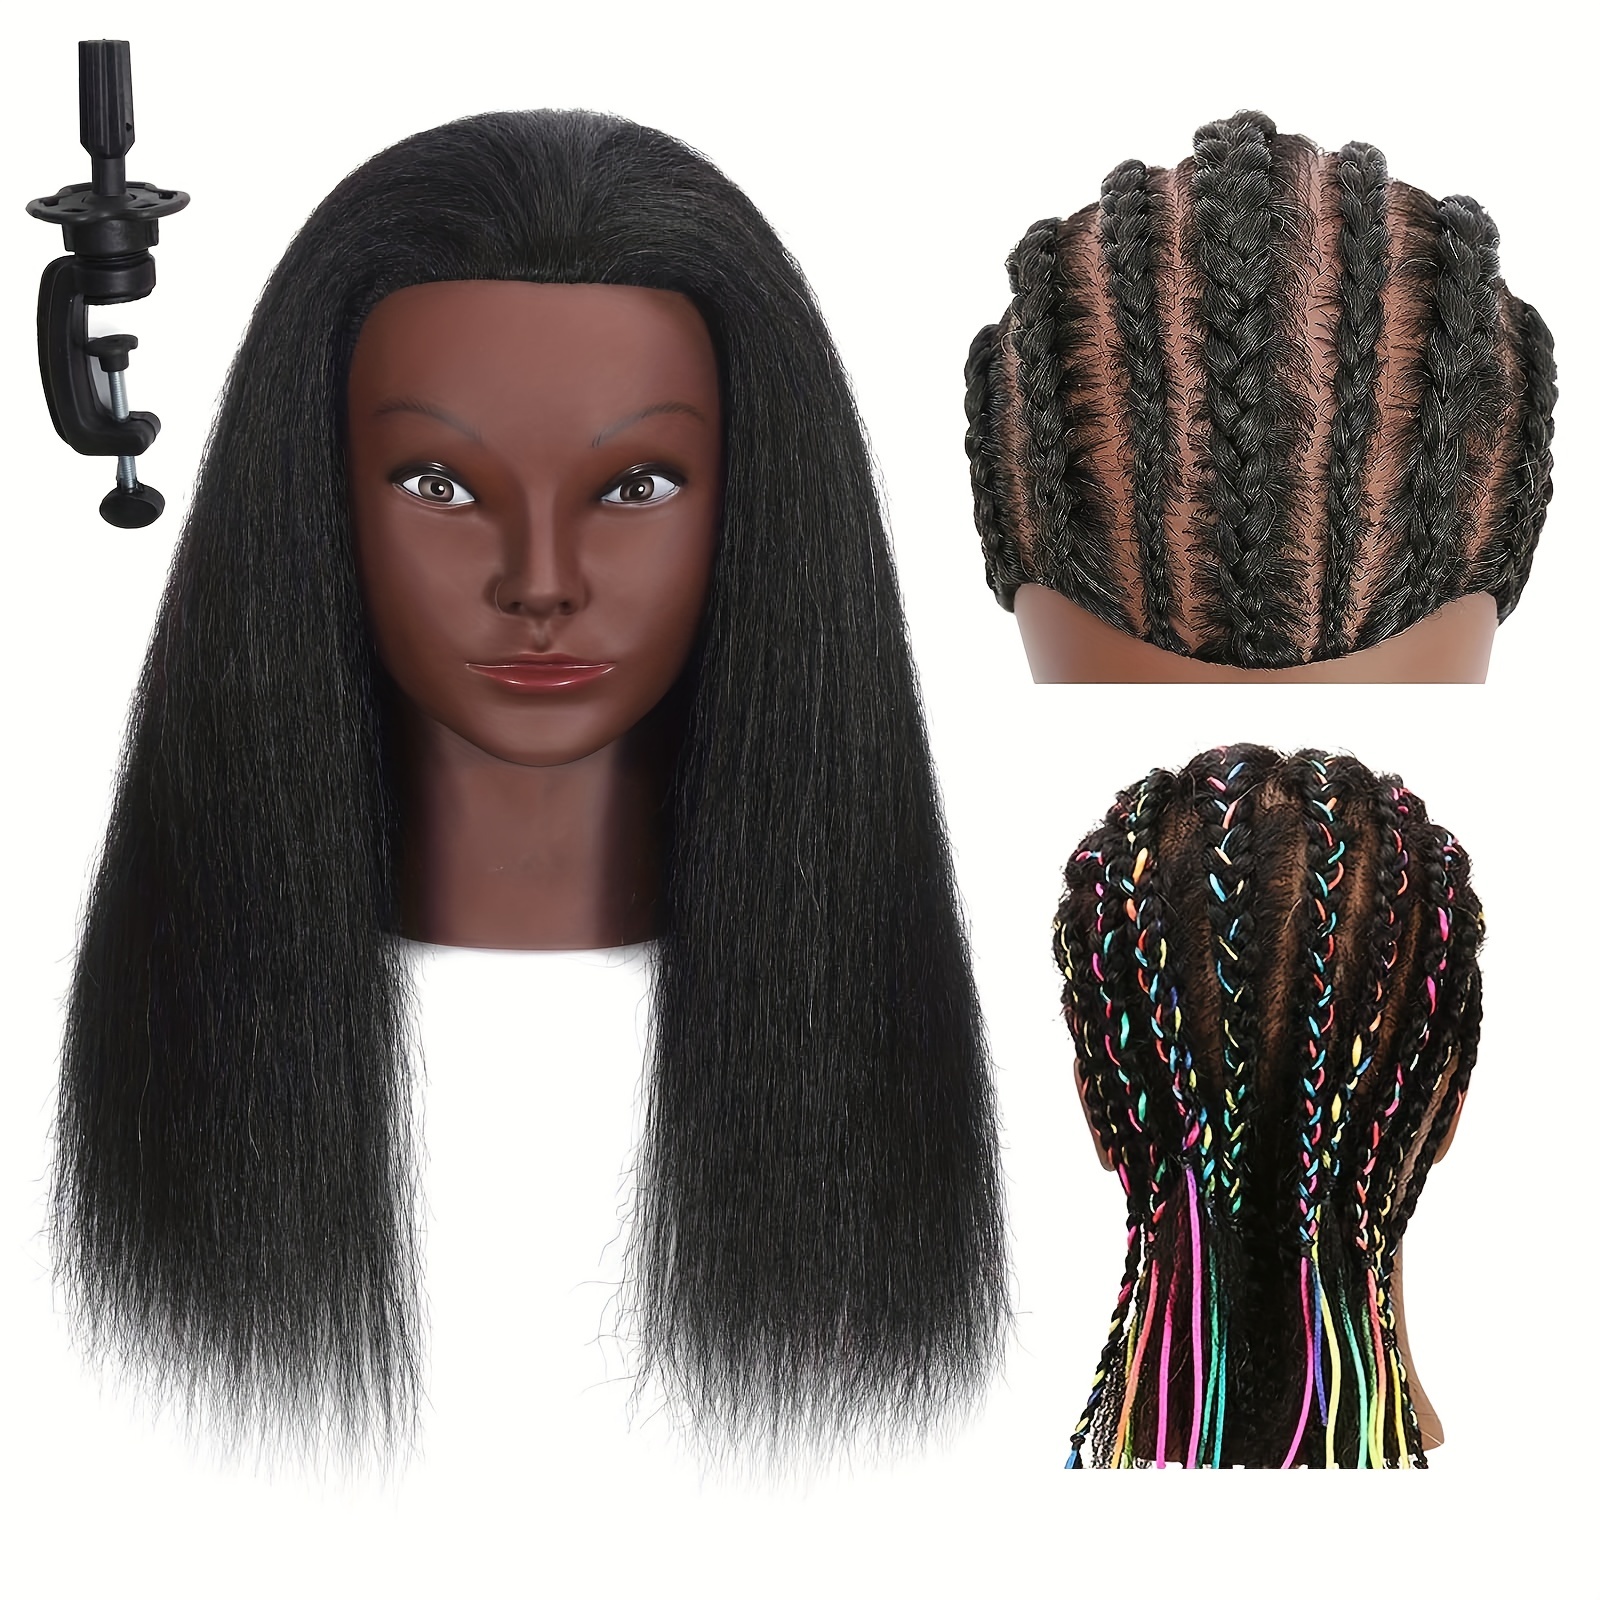 Jiyugala Human Hair Wig Mannequin Head 16 Headband Wigs 